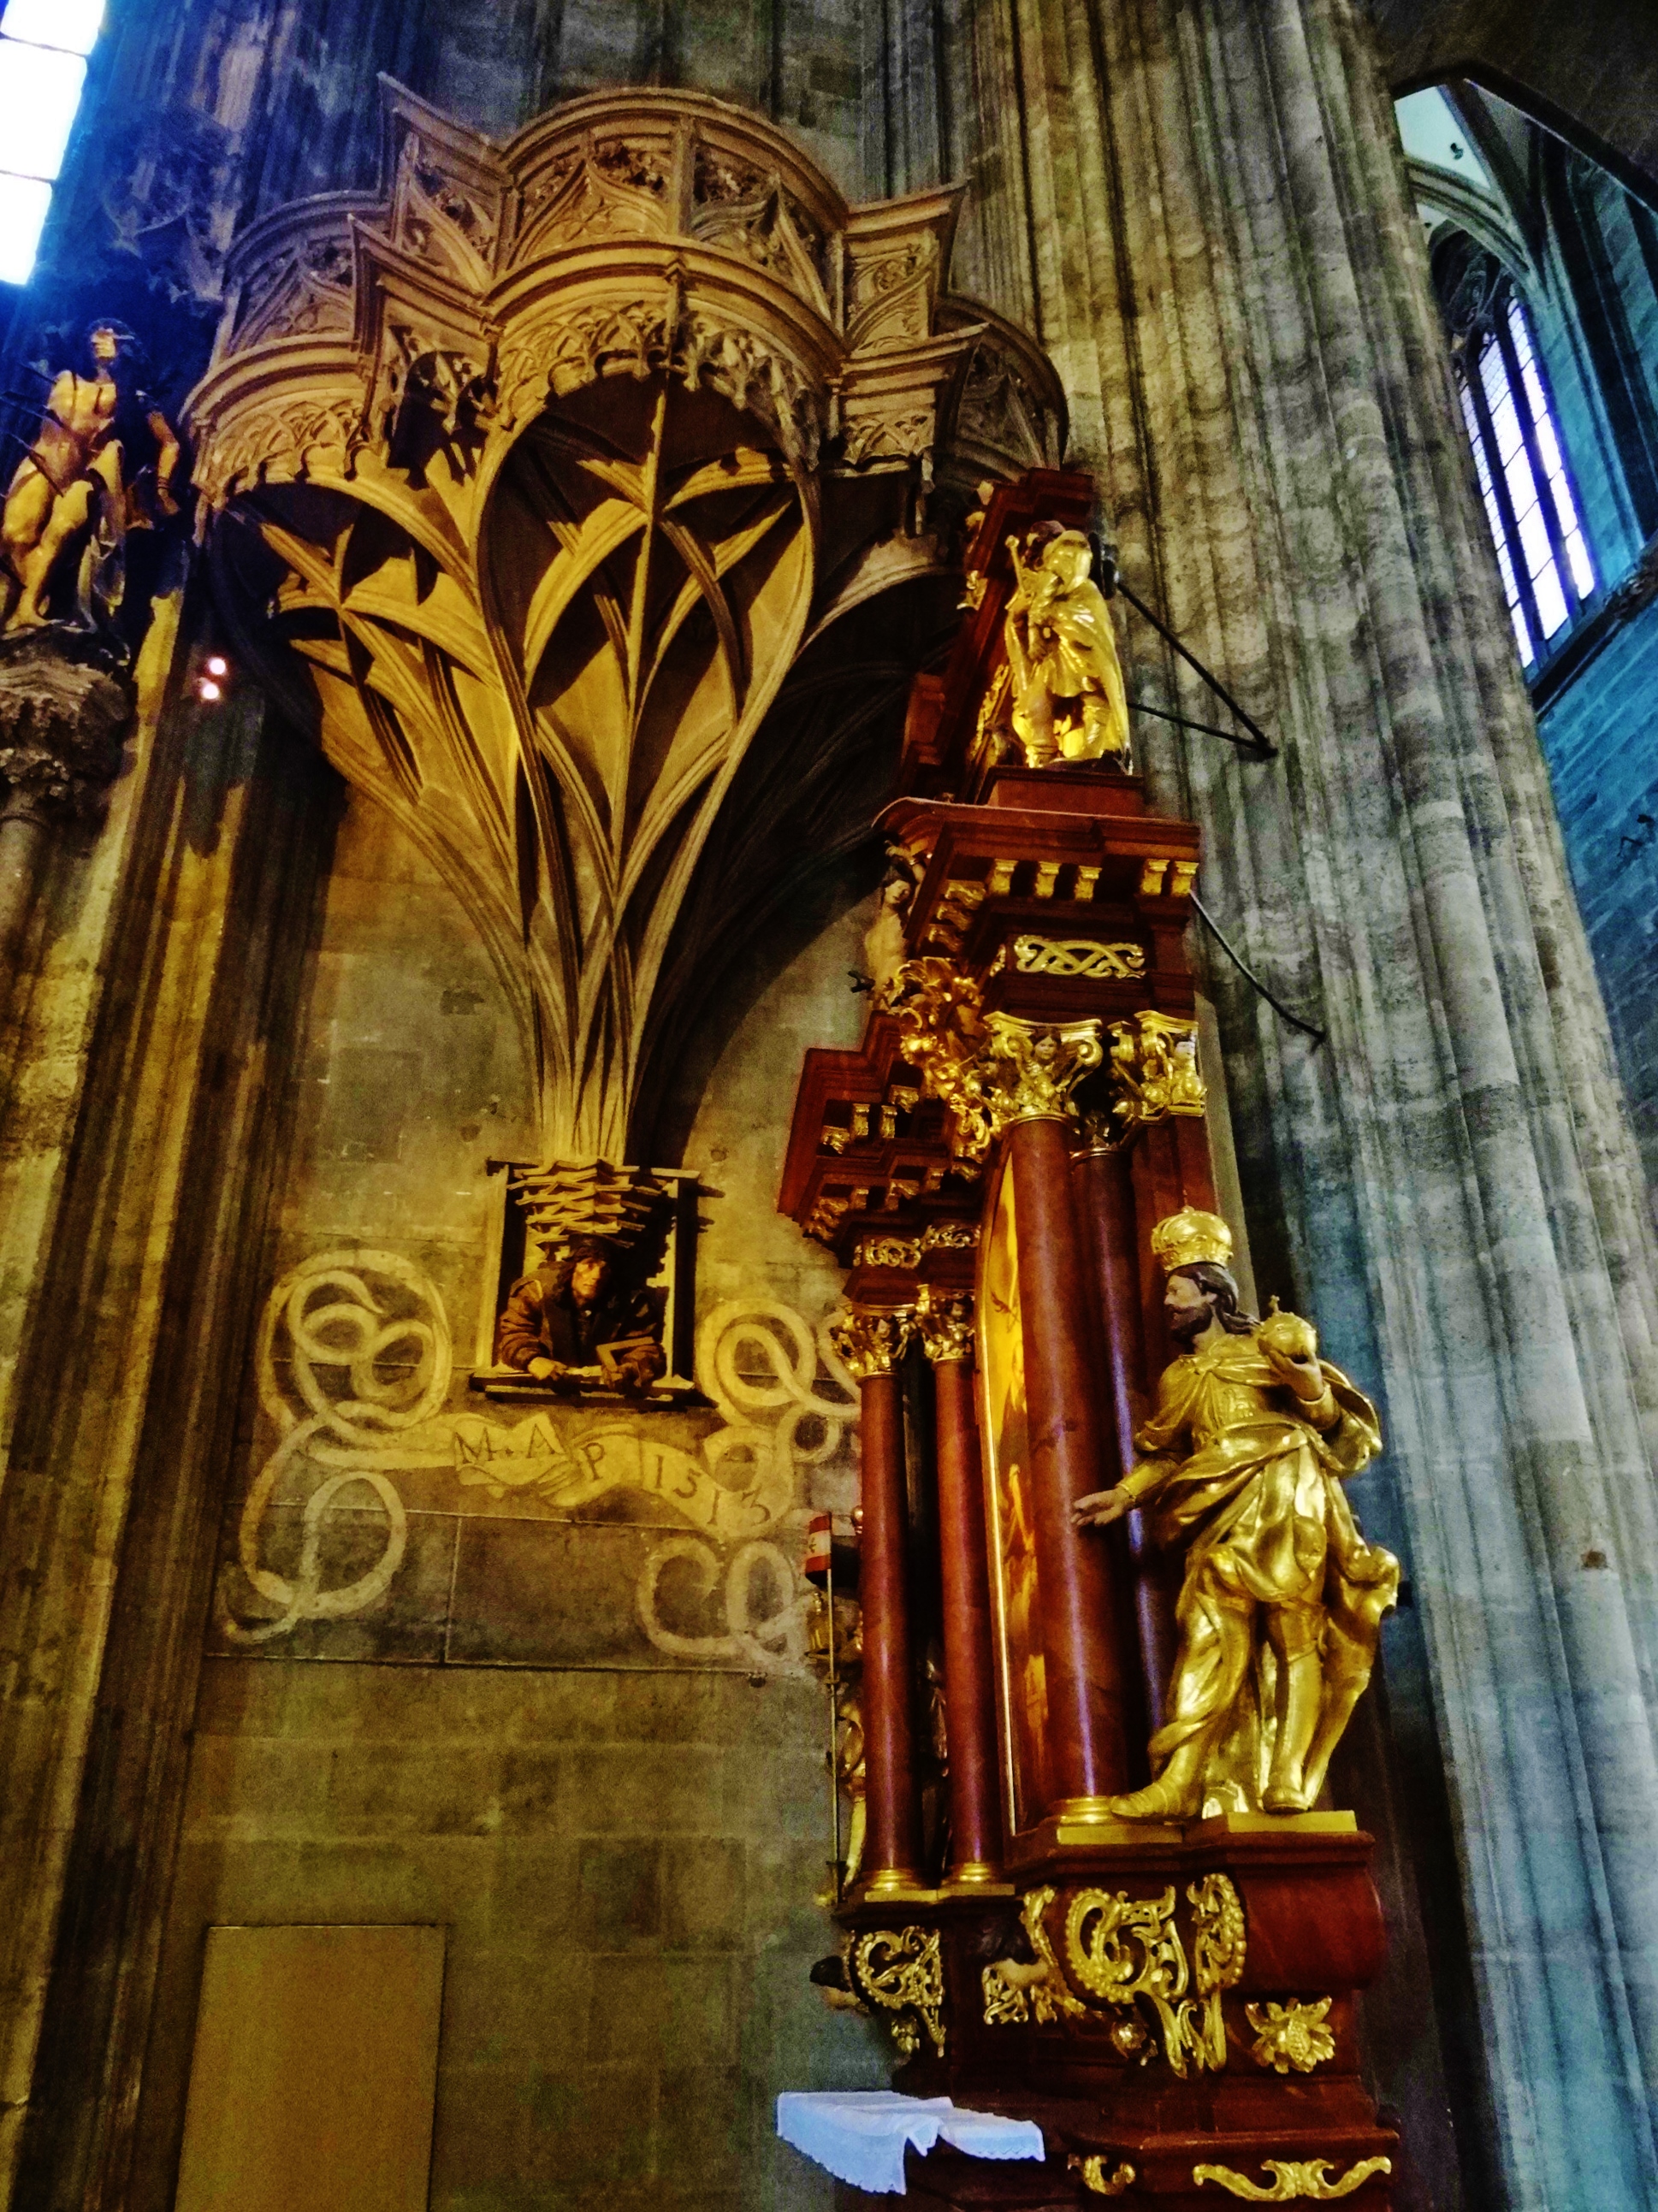 Foto: Domkirche St. Stephan - Wien (Vienna), Austria